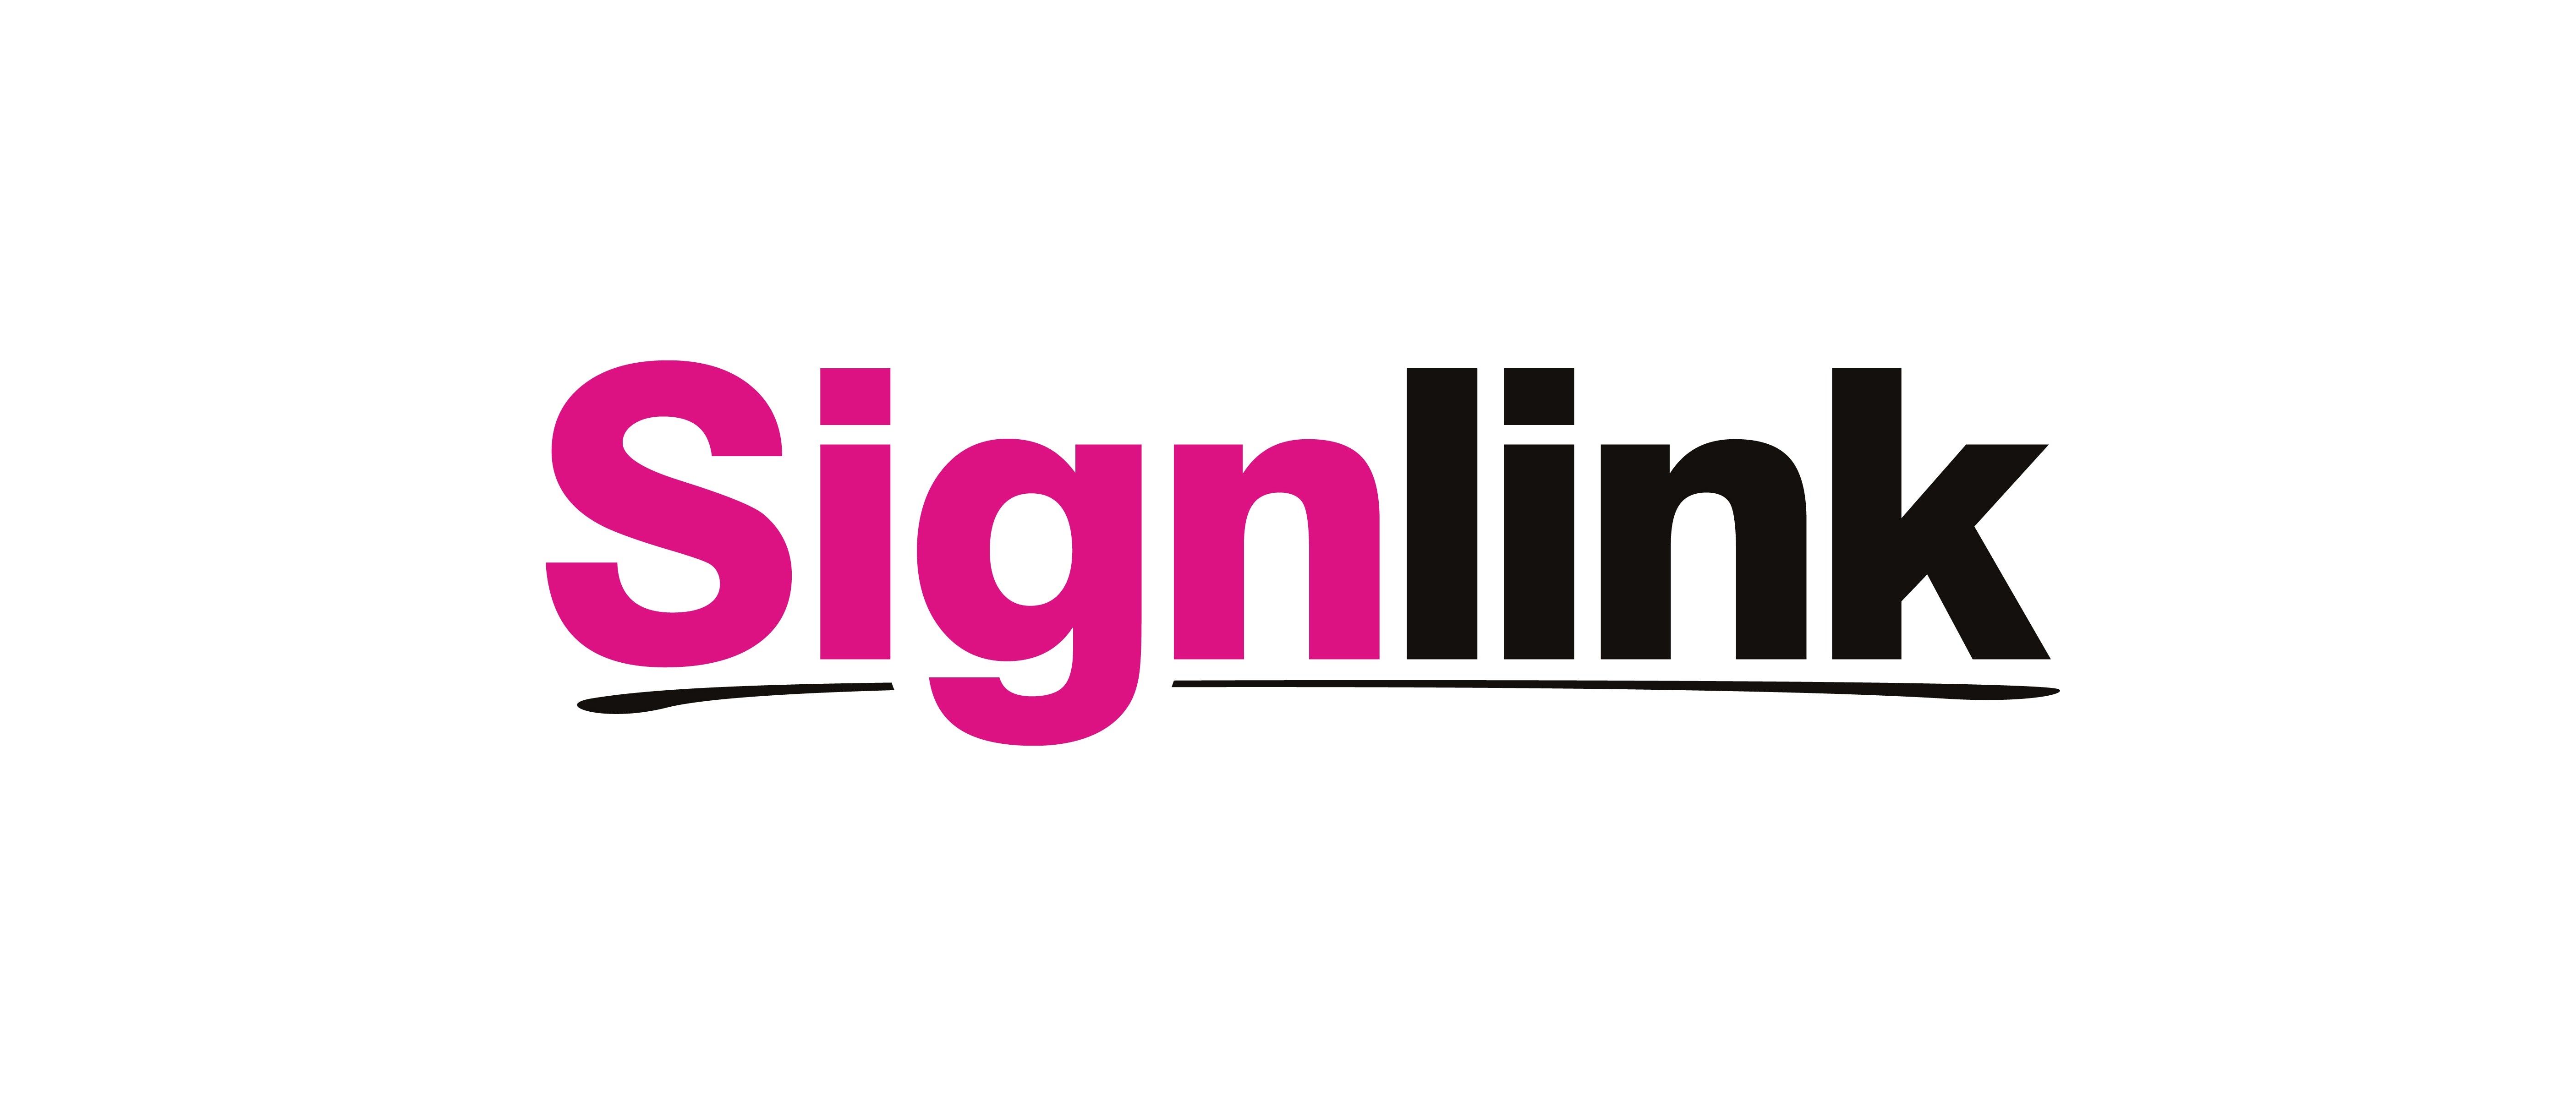 Signlink